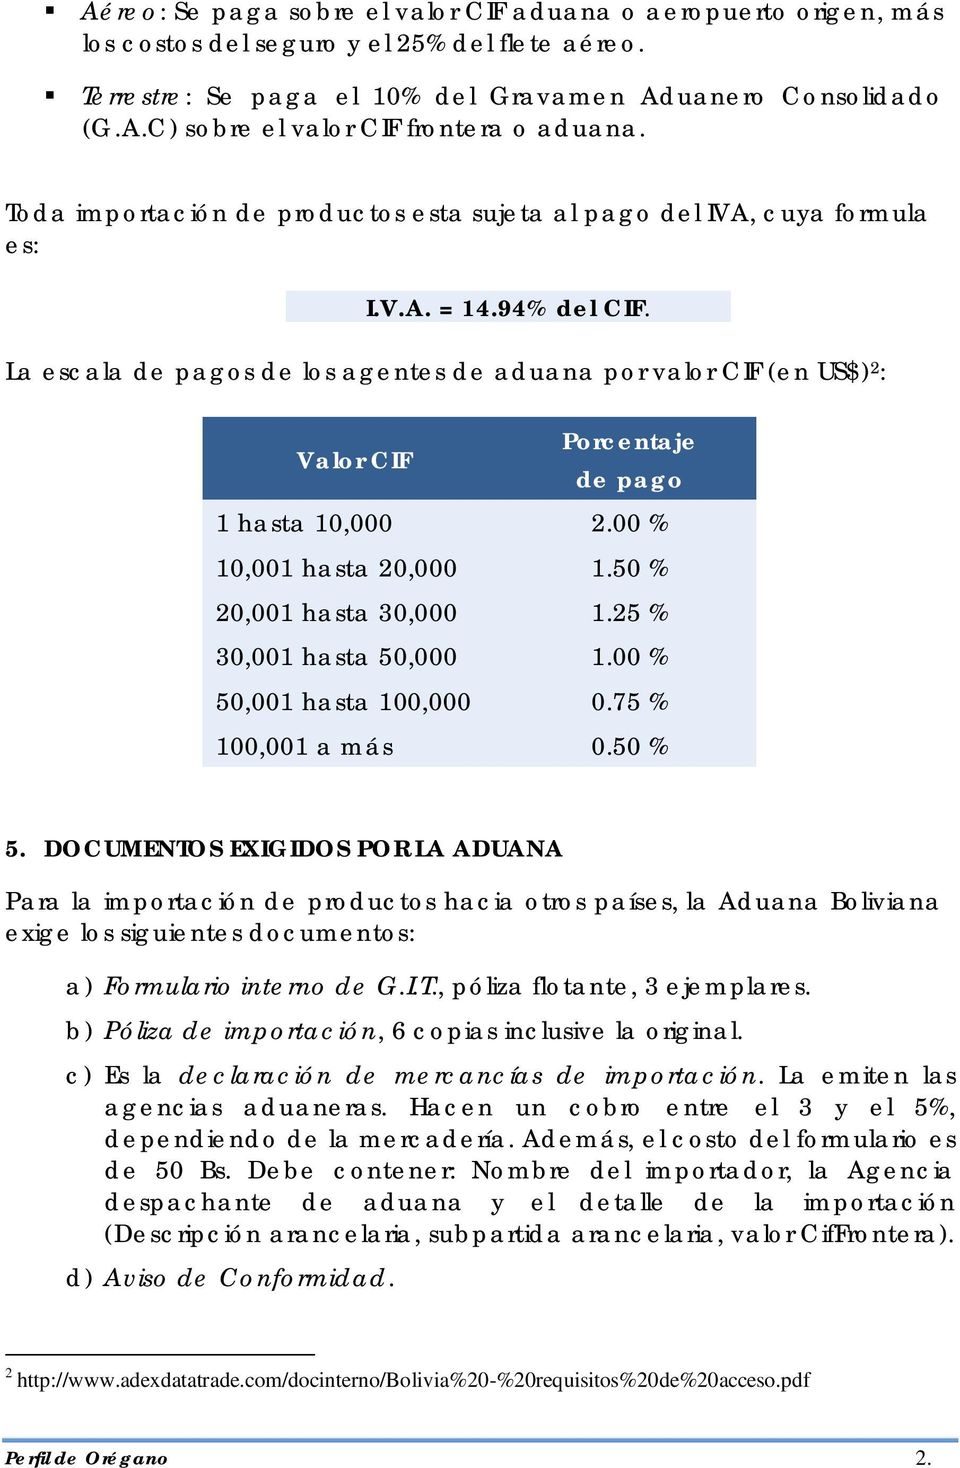 La escala de pagos de los agentes de aduana por valor CIF (en US$) 2 : CIF Porcentaje de pago 1 hasta 10,000 2.00 % 10,001 hasta 20,000 1.50 % 20,001 hasta 30,000 1.25 % 30,001 hasta 50,000 1.